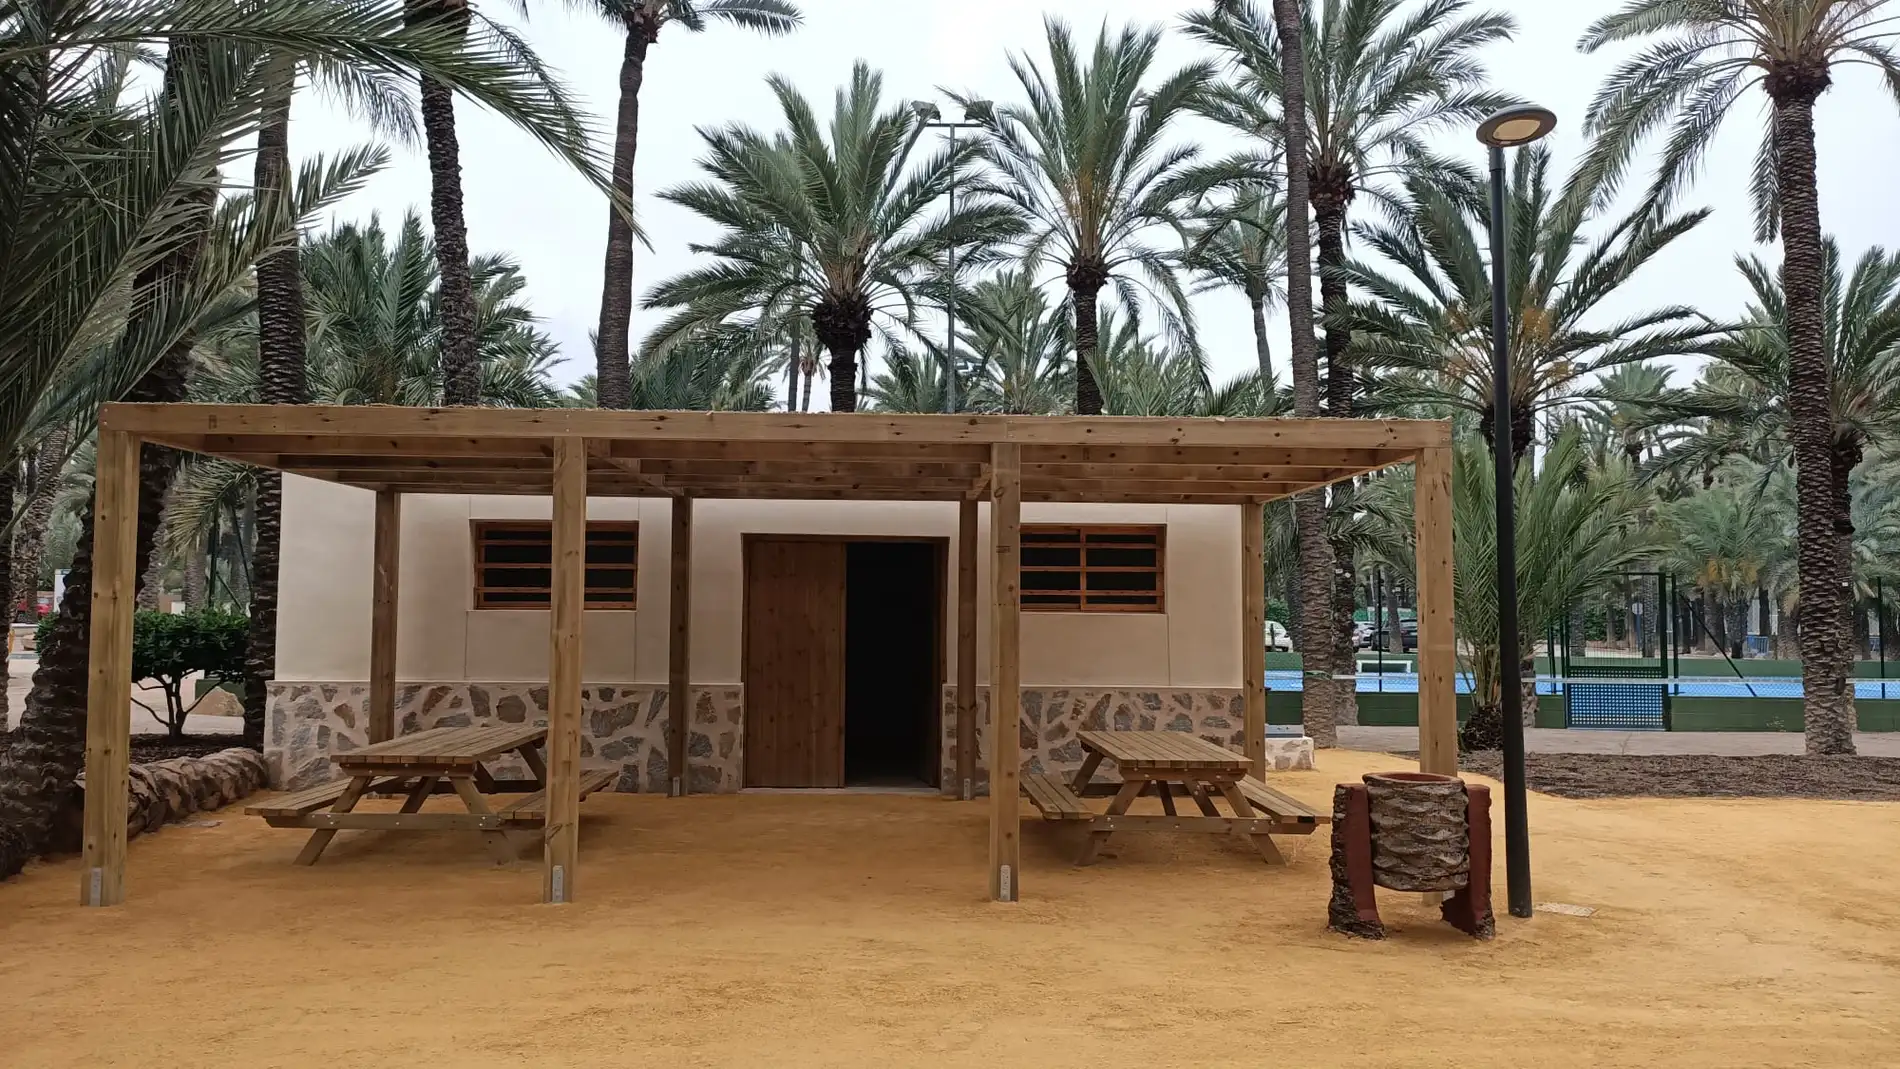 La nueva zona de acogida al visitante cuenta con una zona de picnic con mesas, un anfiteatro de estípites de palmeras 